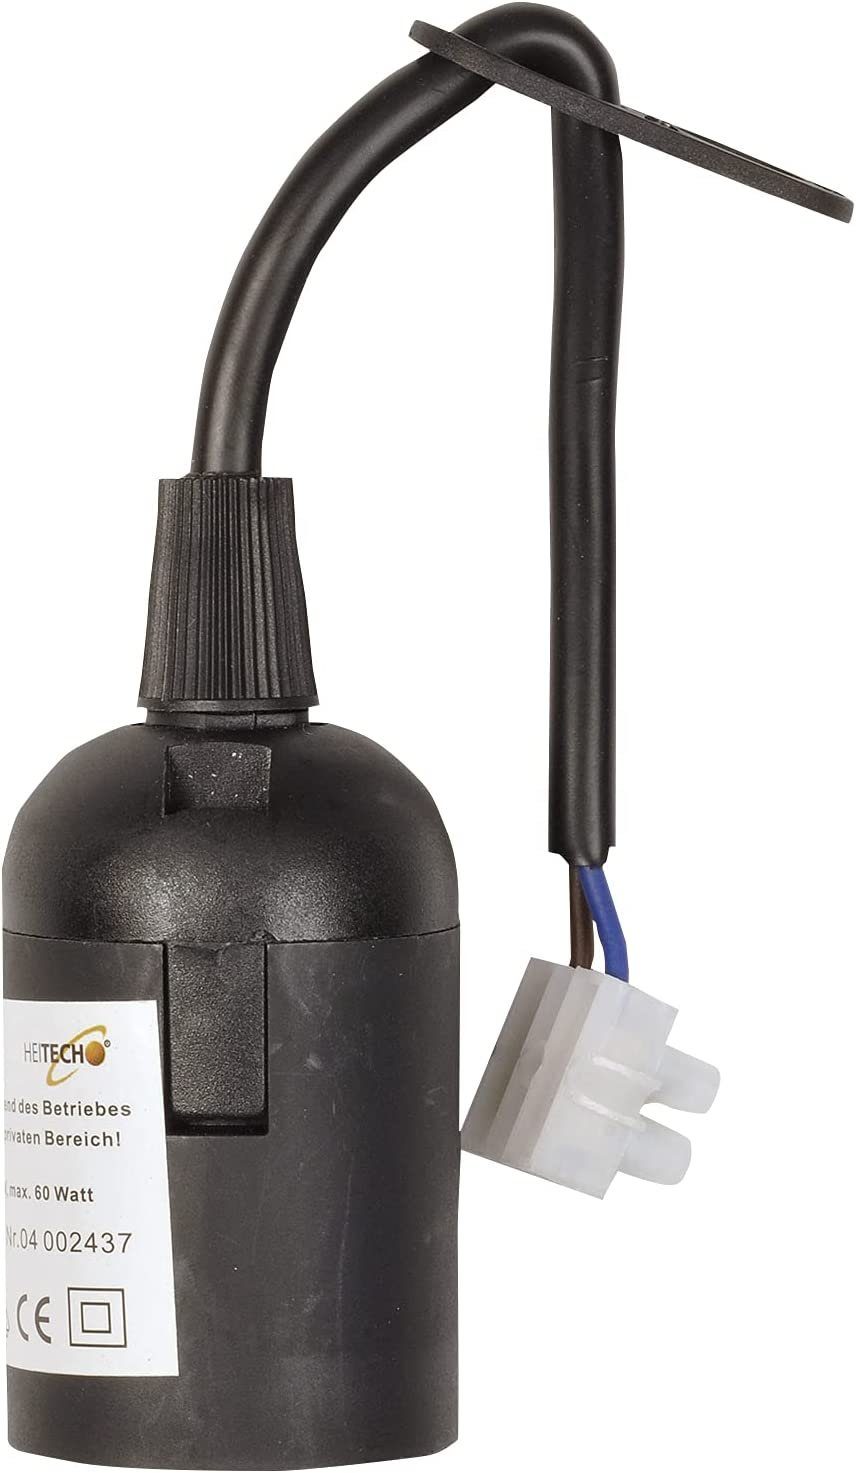 W max. Lampen Kabel 60 Fassung mit schwarz mit - Lampenfassung Lampenfassung HEITECH E27